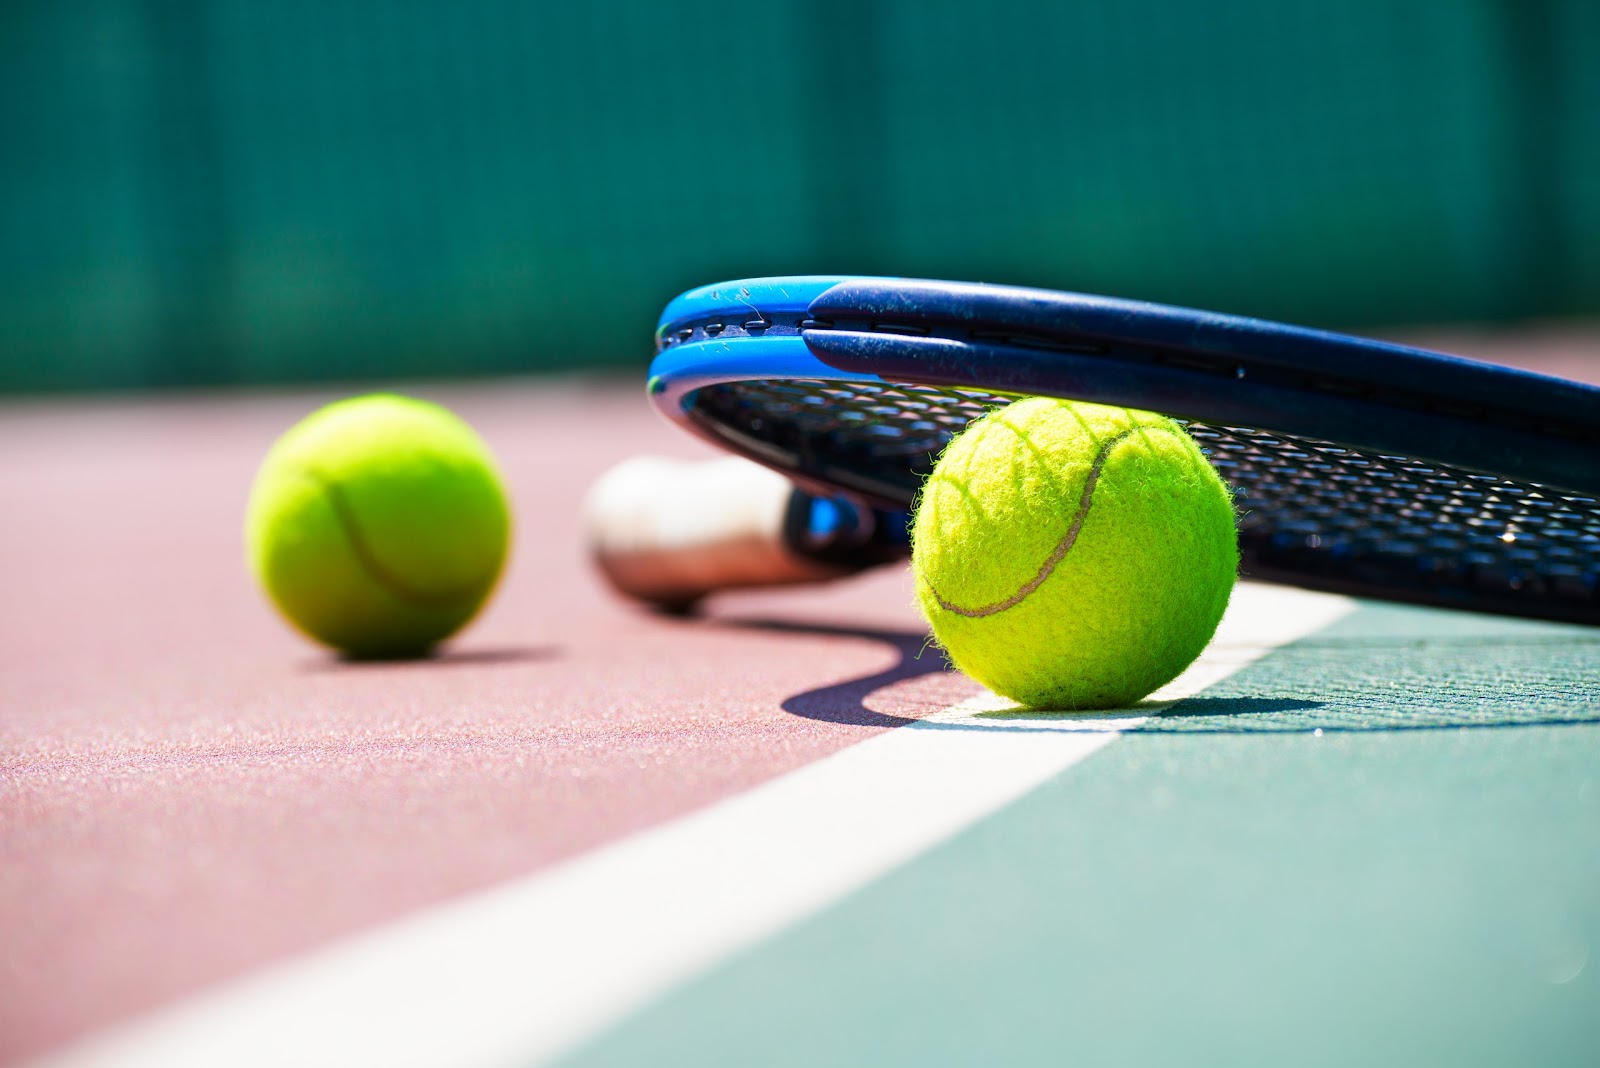 بث مباشر لكل مباريات الدوحة للتنس - Doha Tennis Live